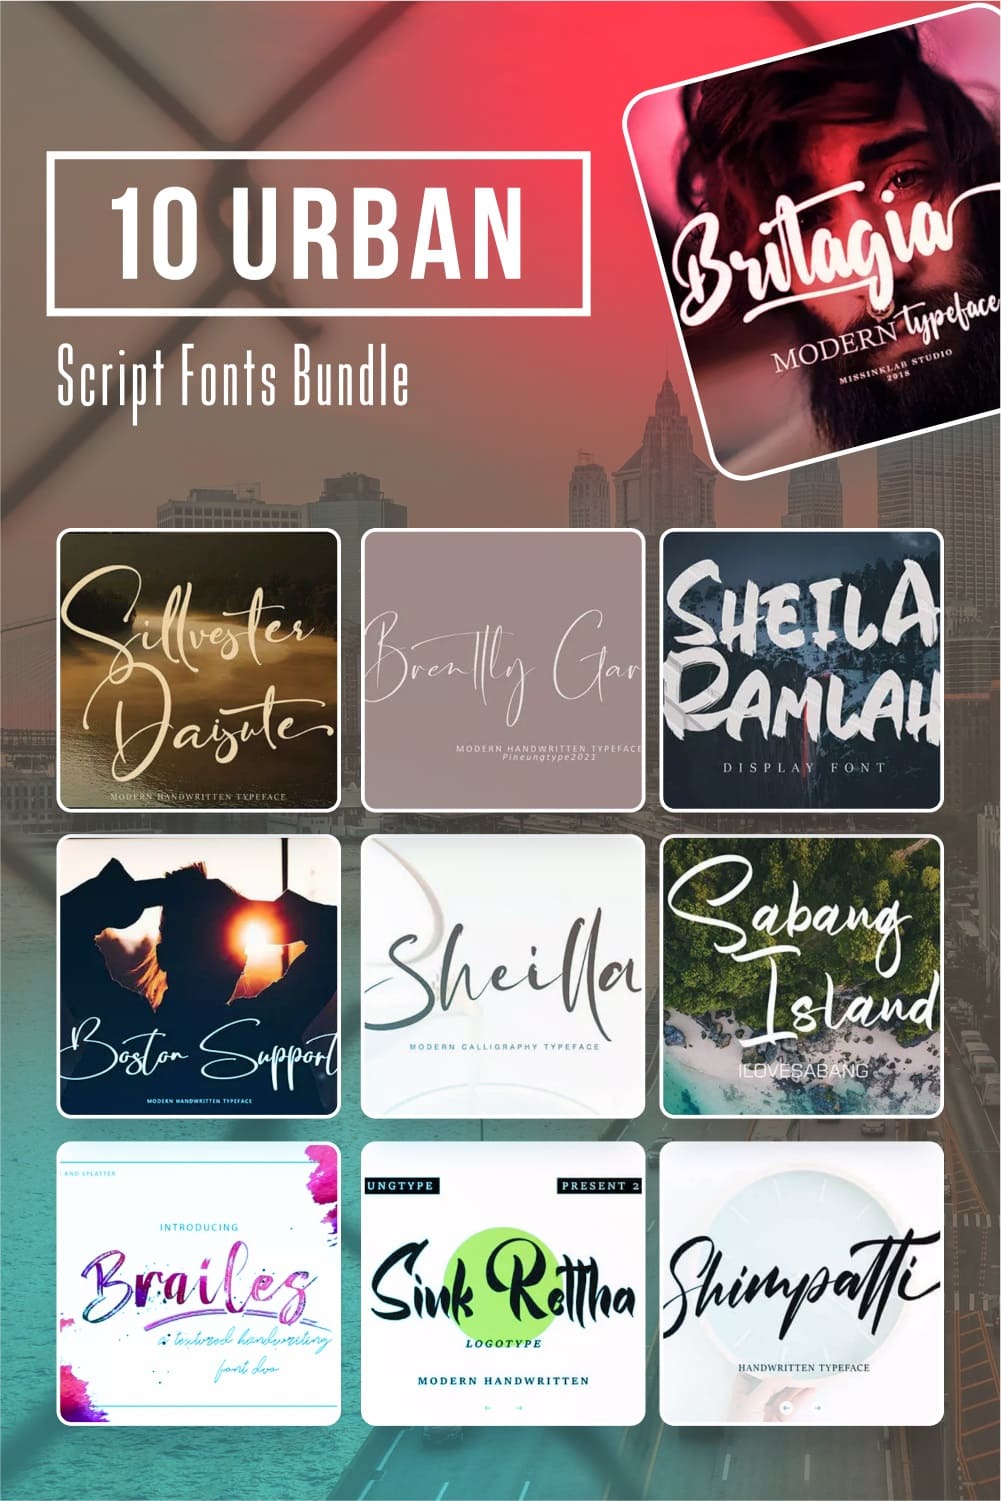 10 urban script fonts bundle Pinterest collage image.